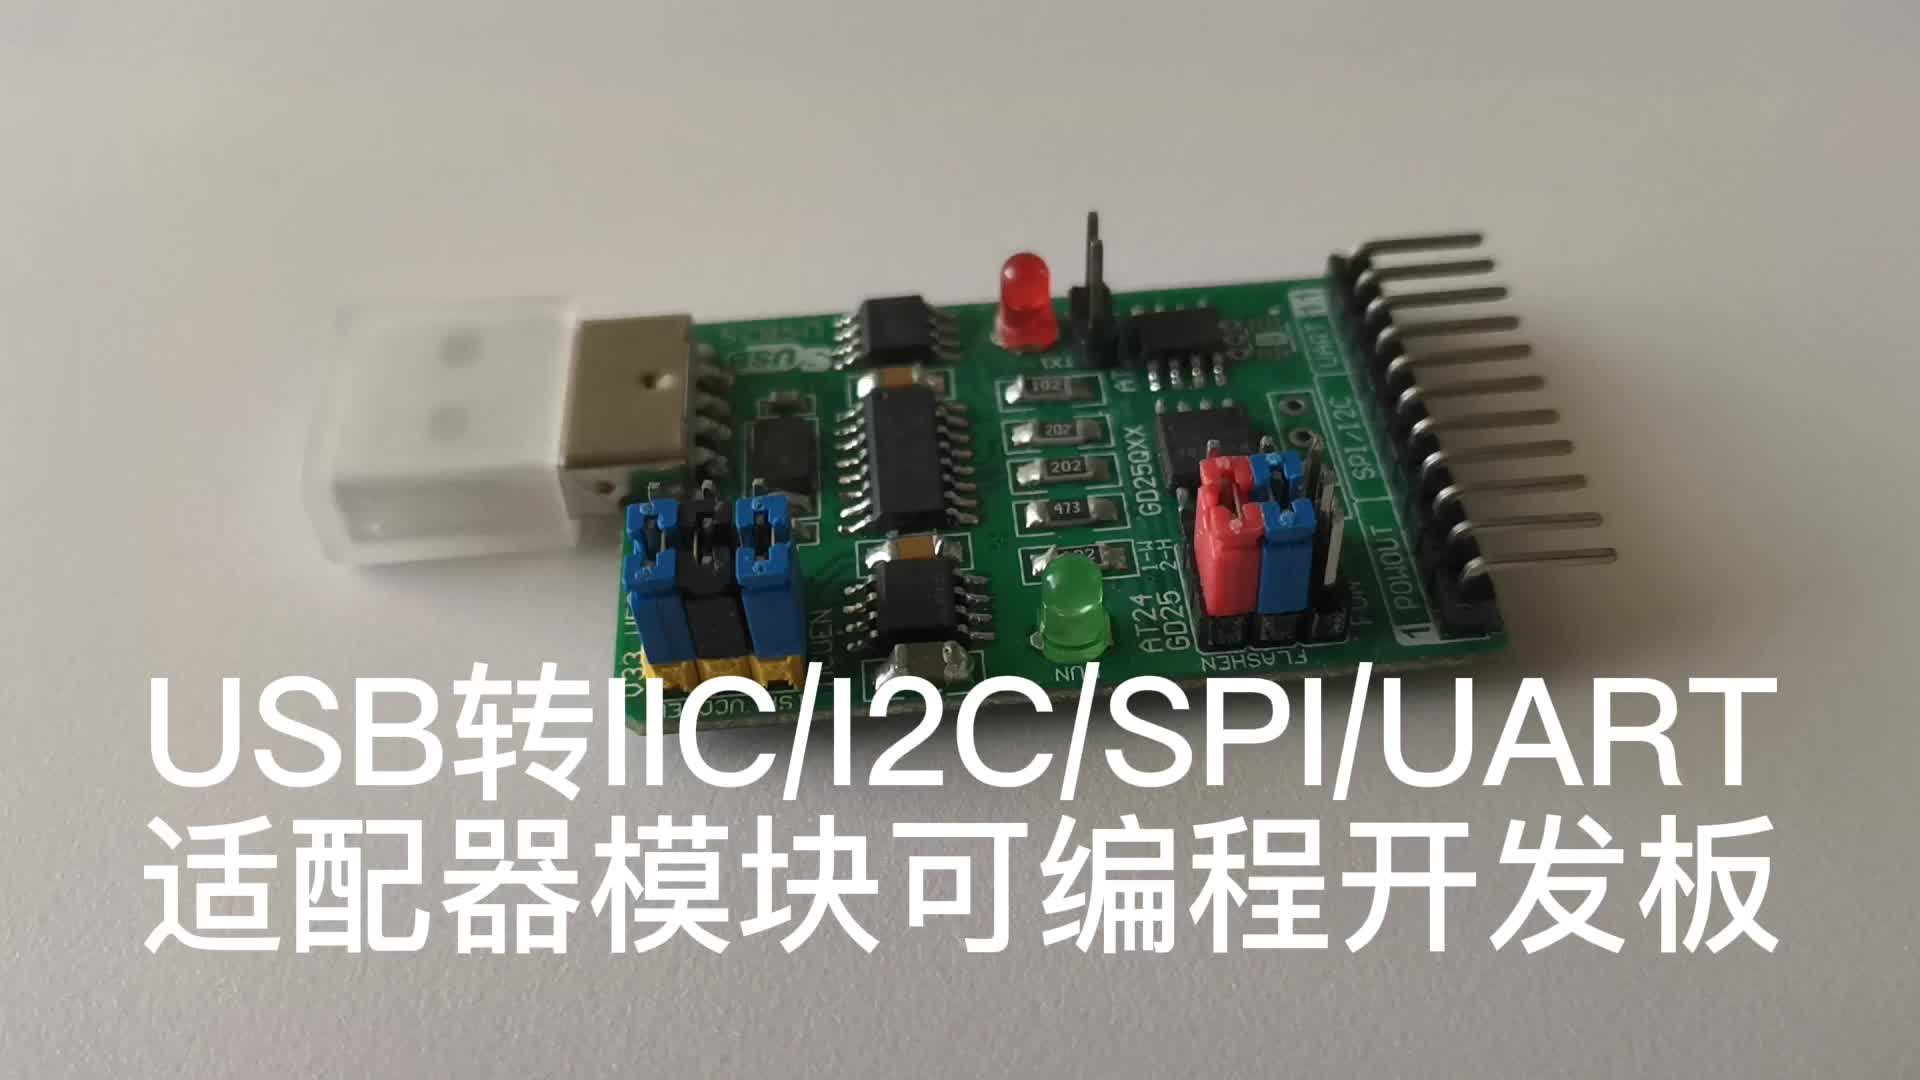 USB转IIC I2C SPI UART适配器模块可编程开发板简单易开发 #嵌入式开发 